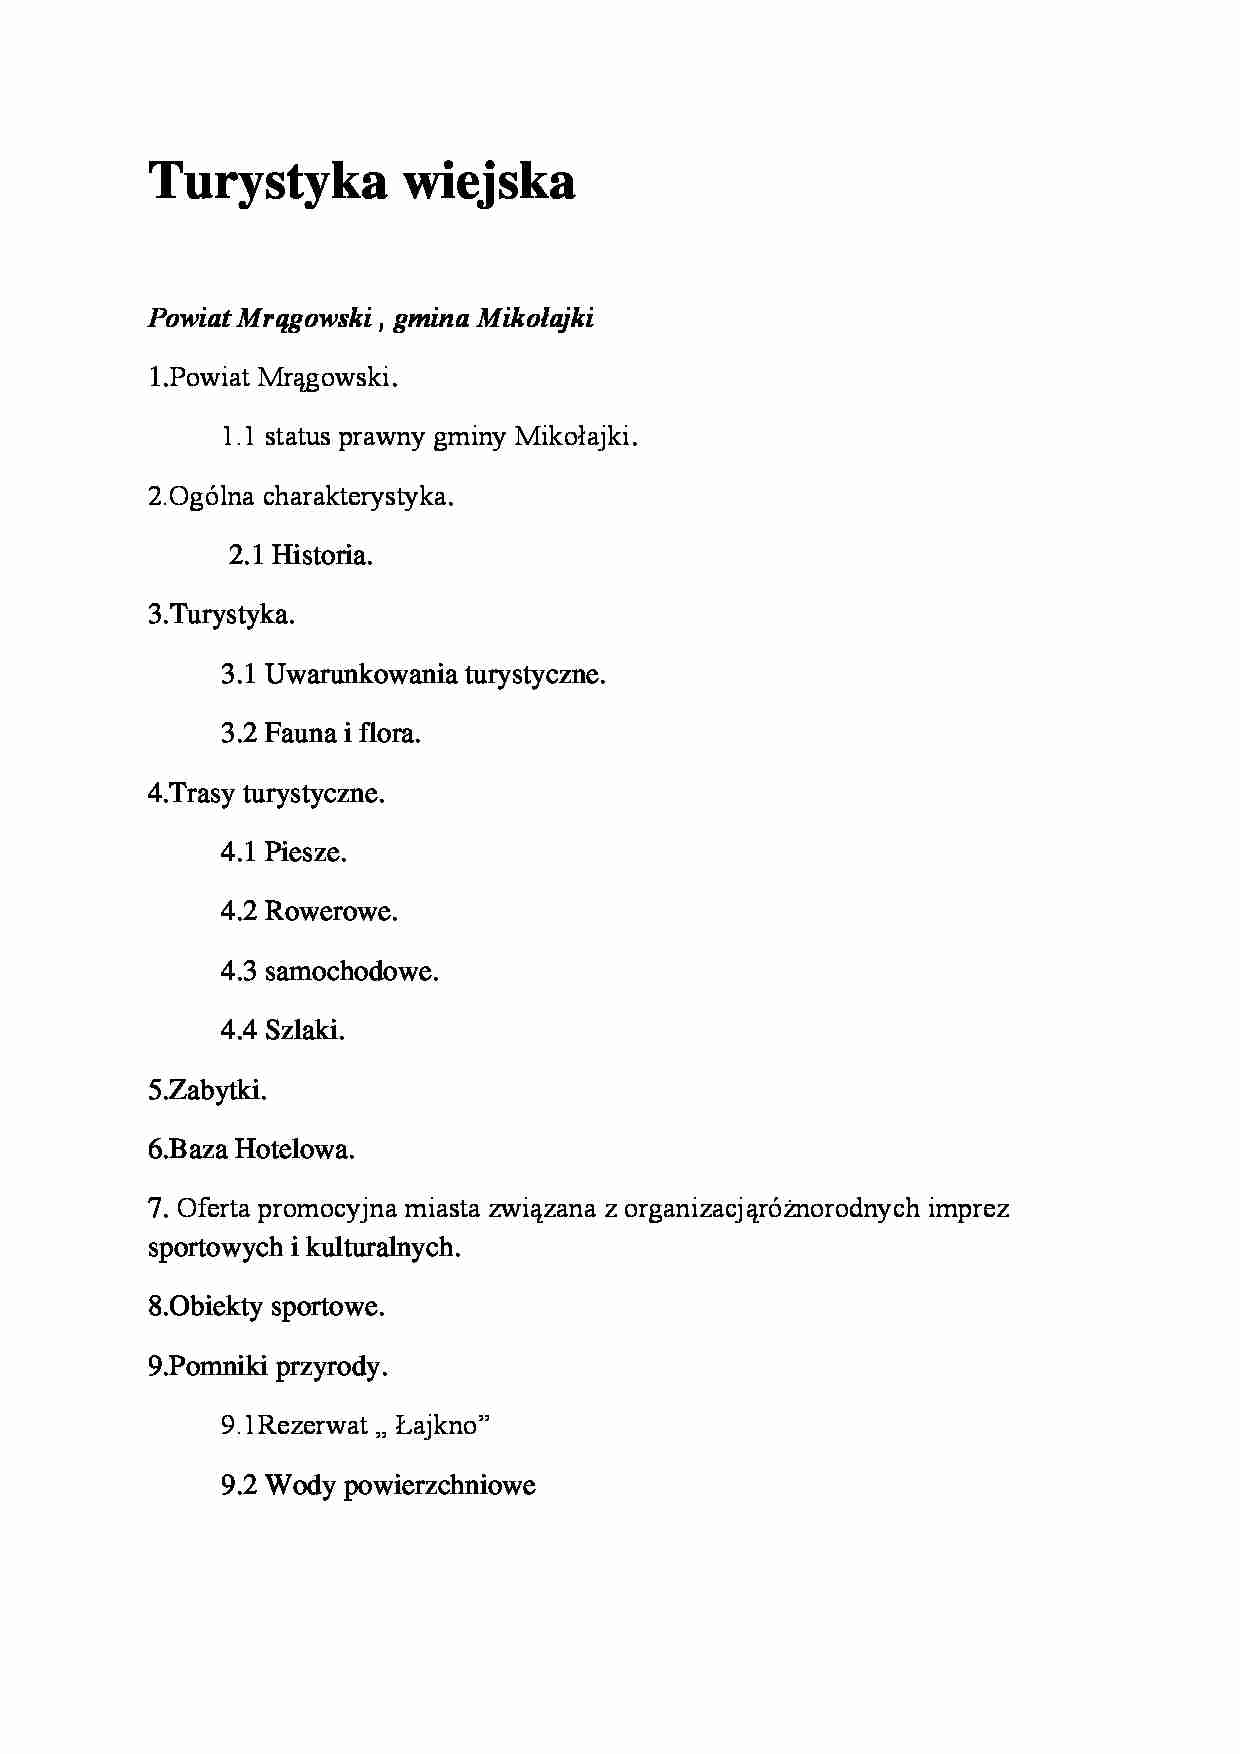 Powiat Mrągowski, gmina Mikołajki - strona 1